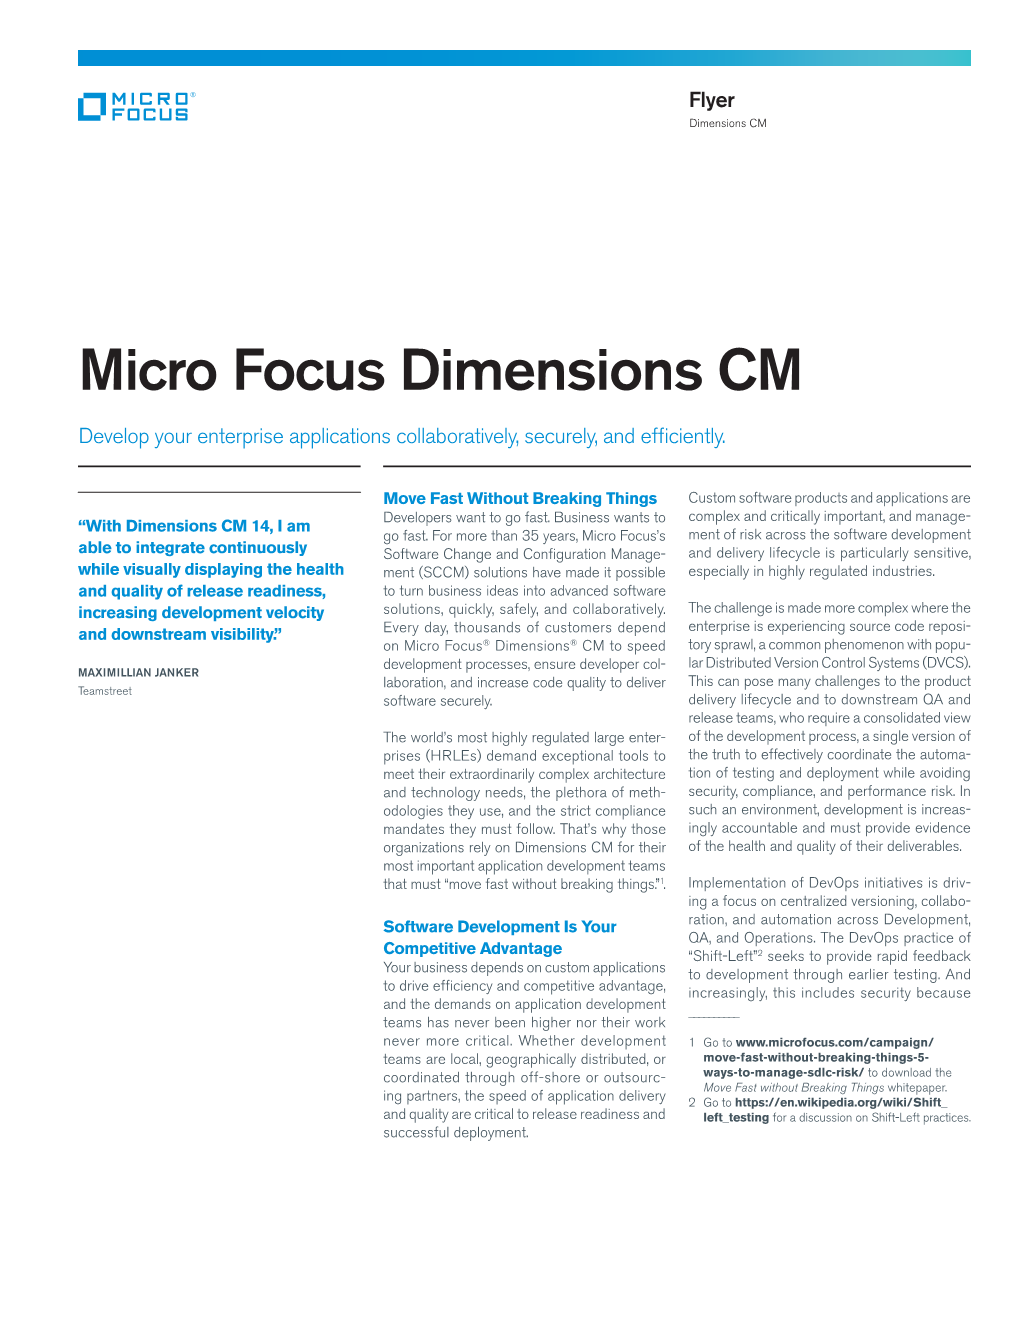 Micro Focus Dimensions CM